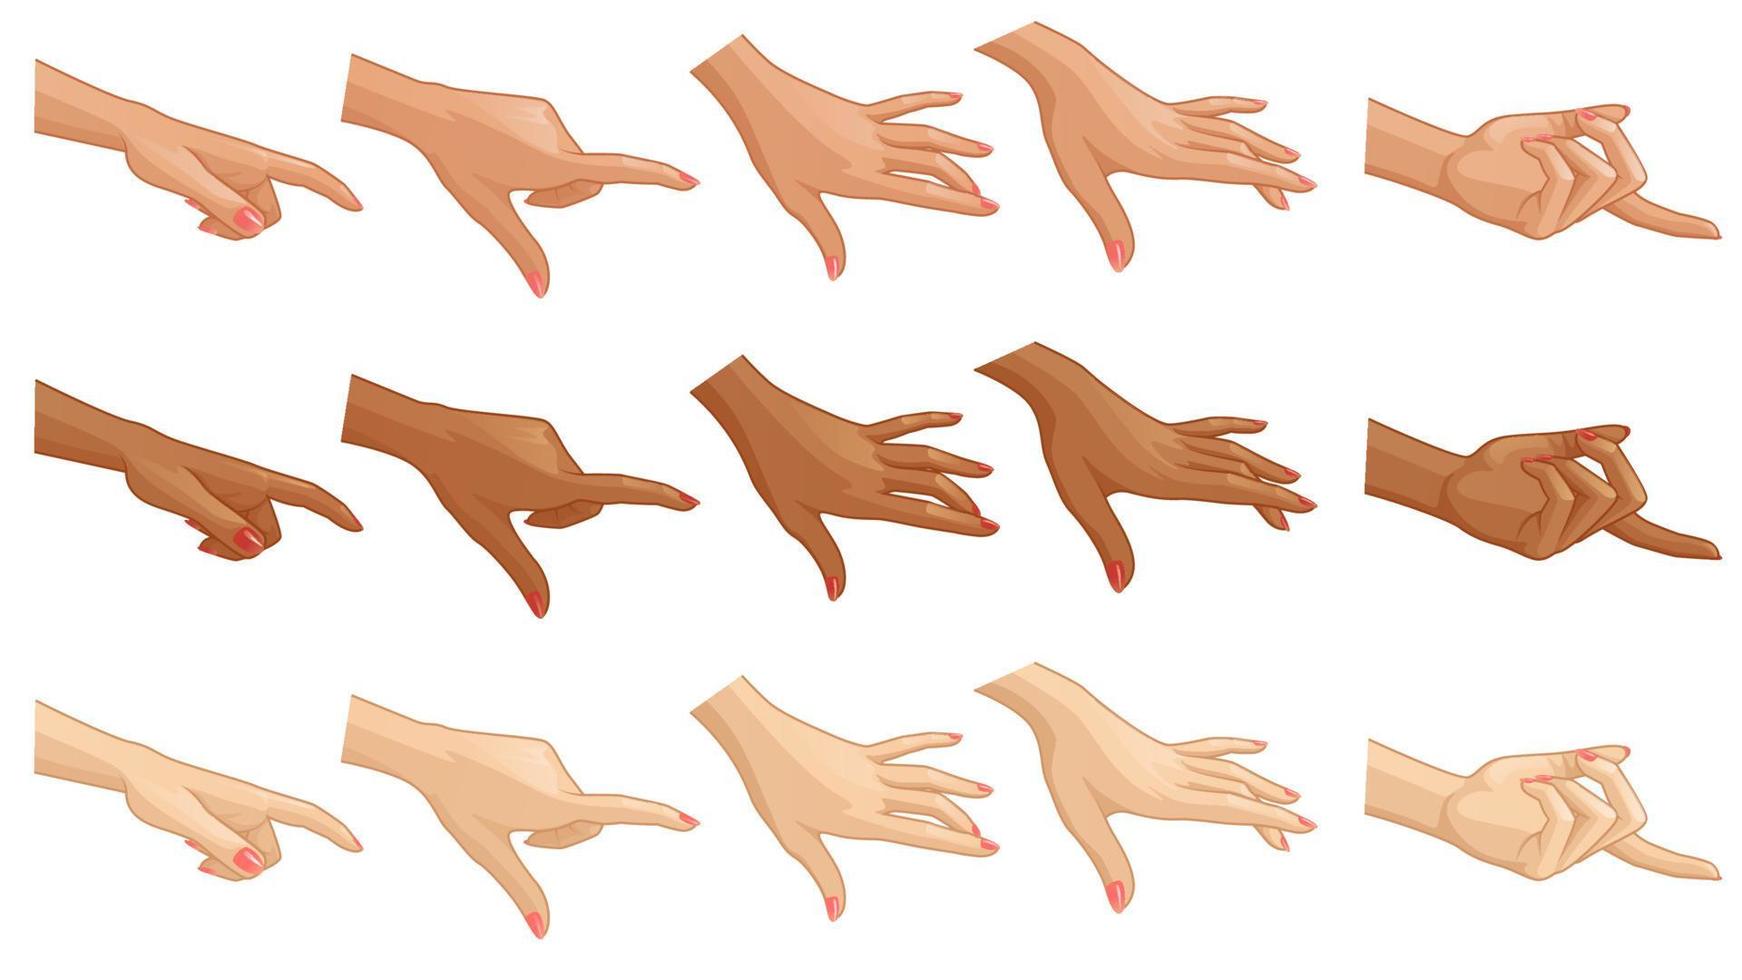 gesto della mano del fumetto impostato per il design in diversi colori della pelle. illustrazione vettoriale